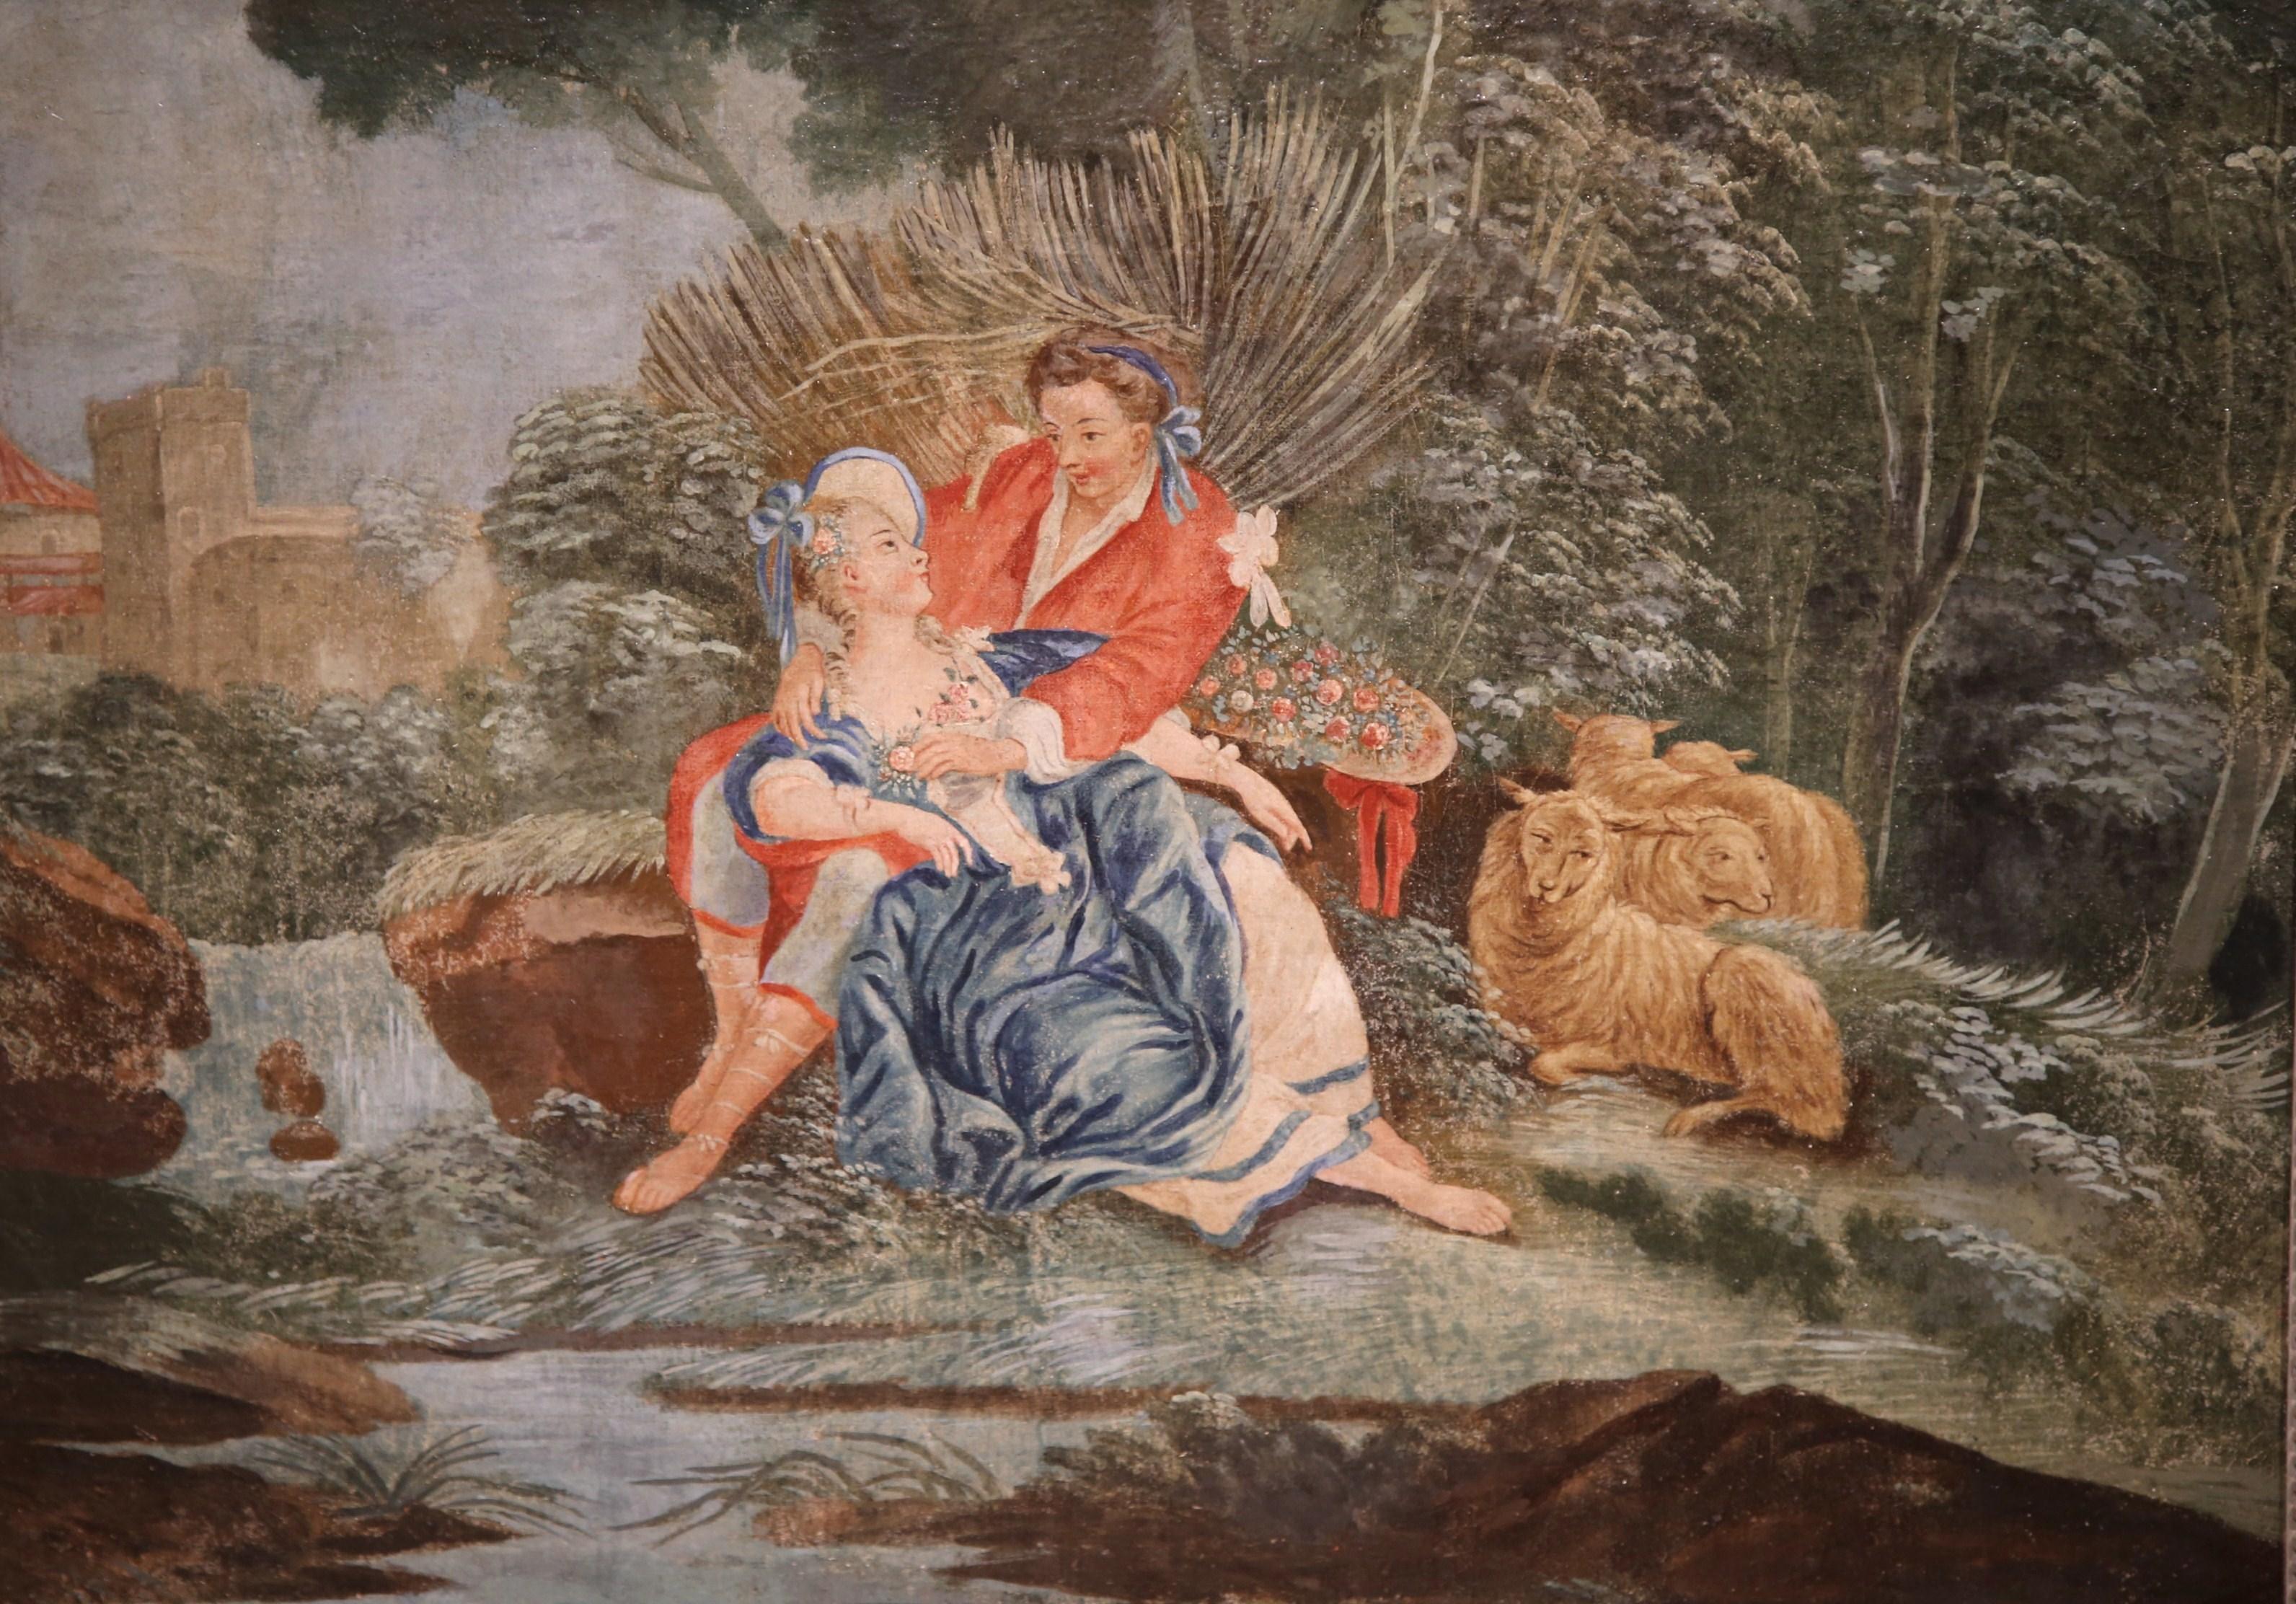 Dieses elegante antike Gemälde auf Leinwand wurde um 1760 in Frankreich geschaffen. Die farbenfrohe Komposition zeigt eine romantische Szene mit einem Herrn, der einer Frau in einem Park den Hof macht, und Schafen und Laub im Hintergrund; die